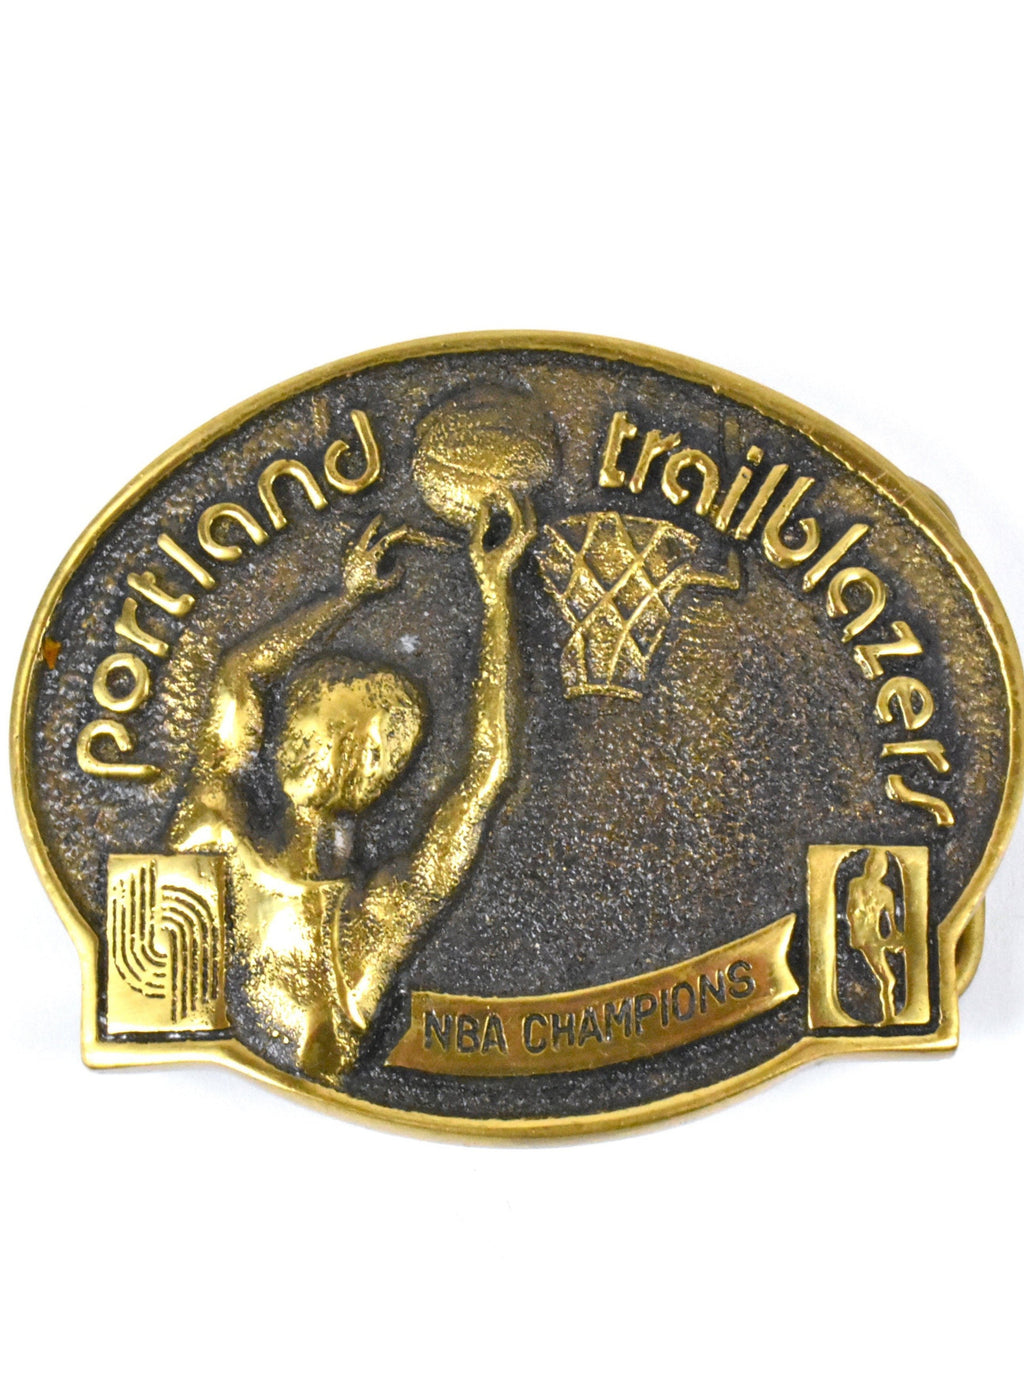 Portland Trail Blazers Gifts, Trail Blazers Accessories, Pins